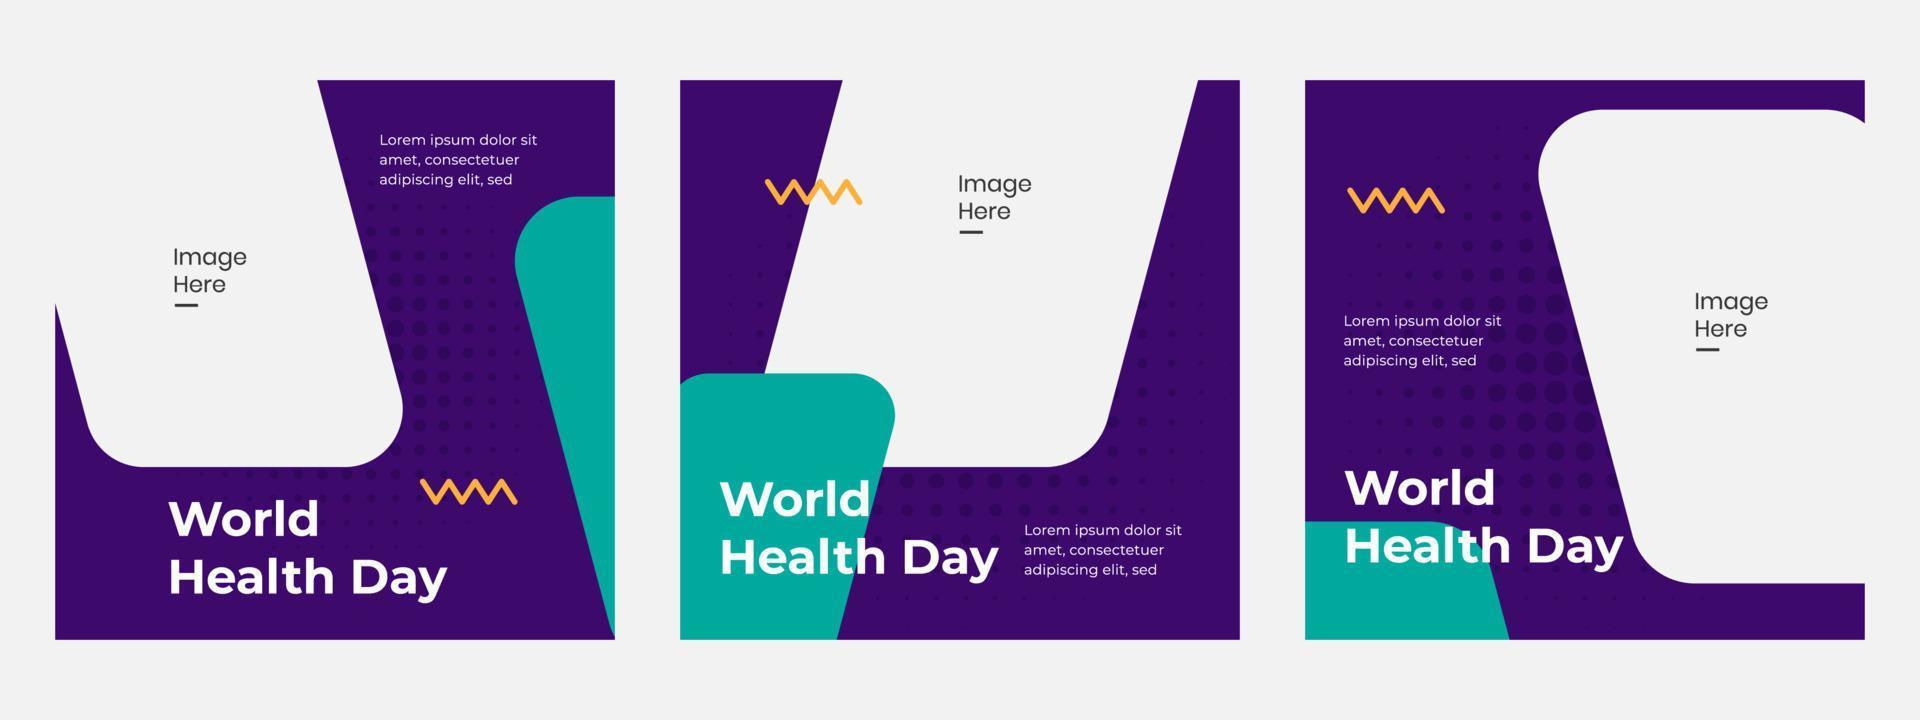 mall banner digital världshälsodag. lämplig för social media. kampanjdesign vektor